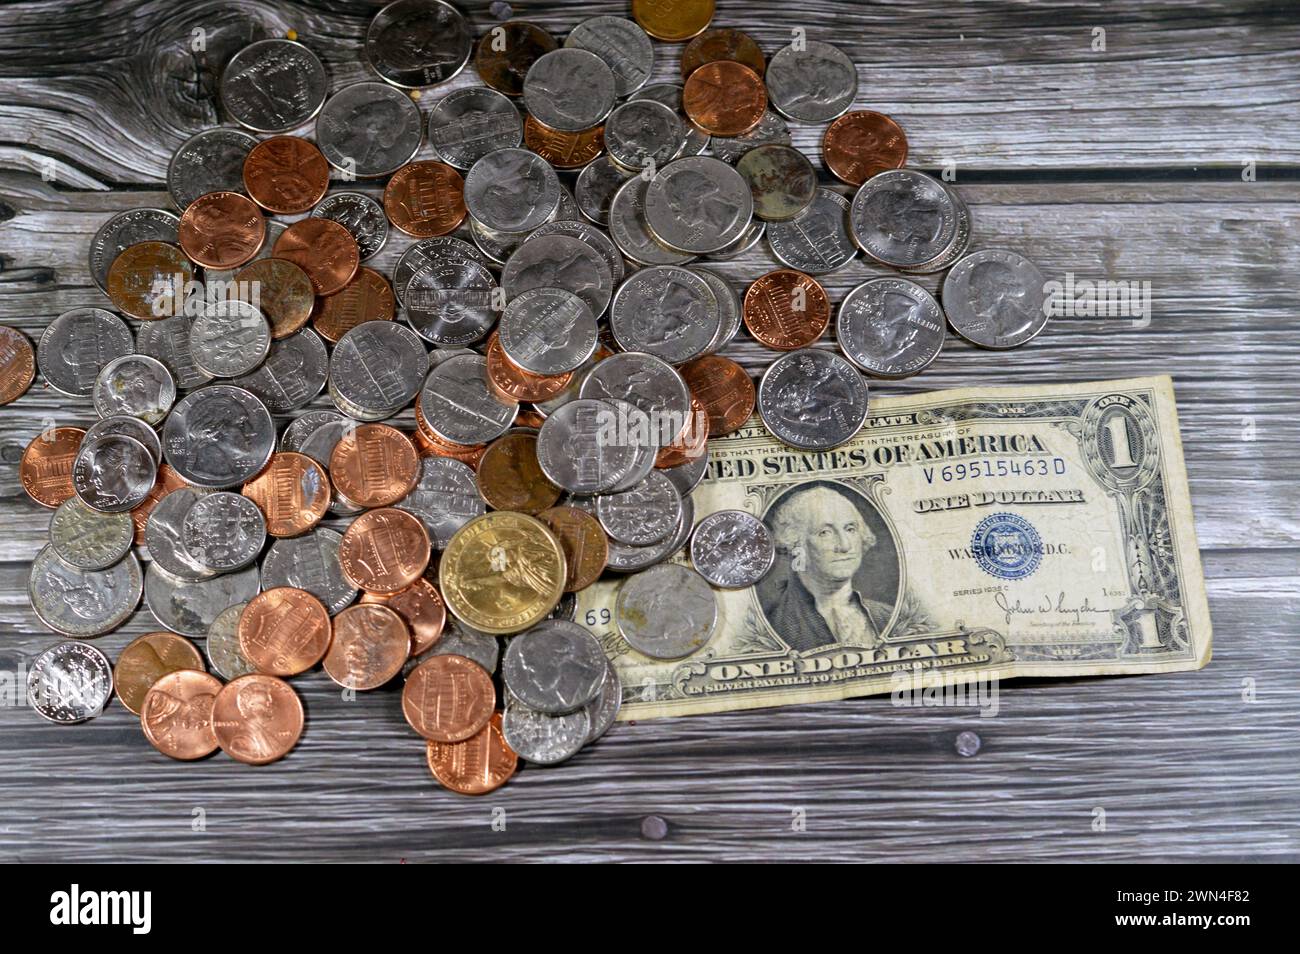 USD monete americane 1 cent, 5, 10, 25 centesimi trimestre, un dollaro, moneta americana d'epoca retrò di una banconota da 1935 dollari americani con Geor Foto Stock